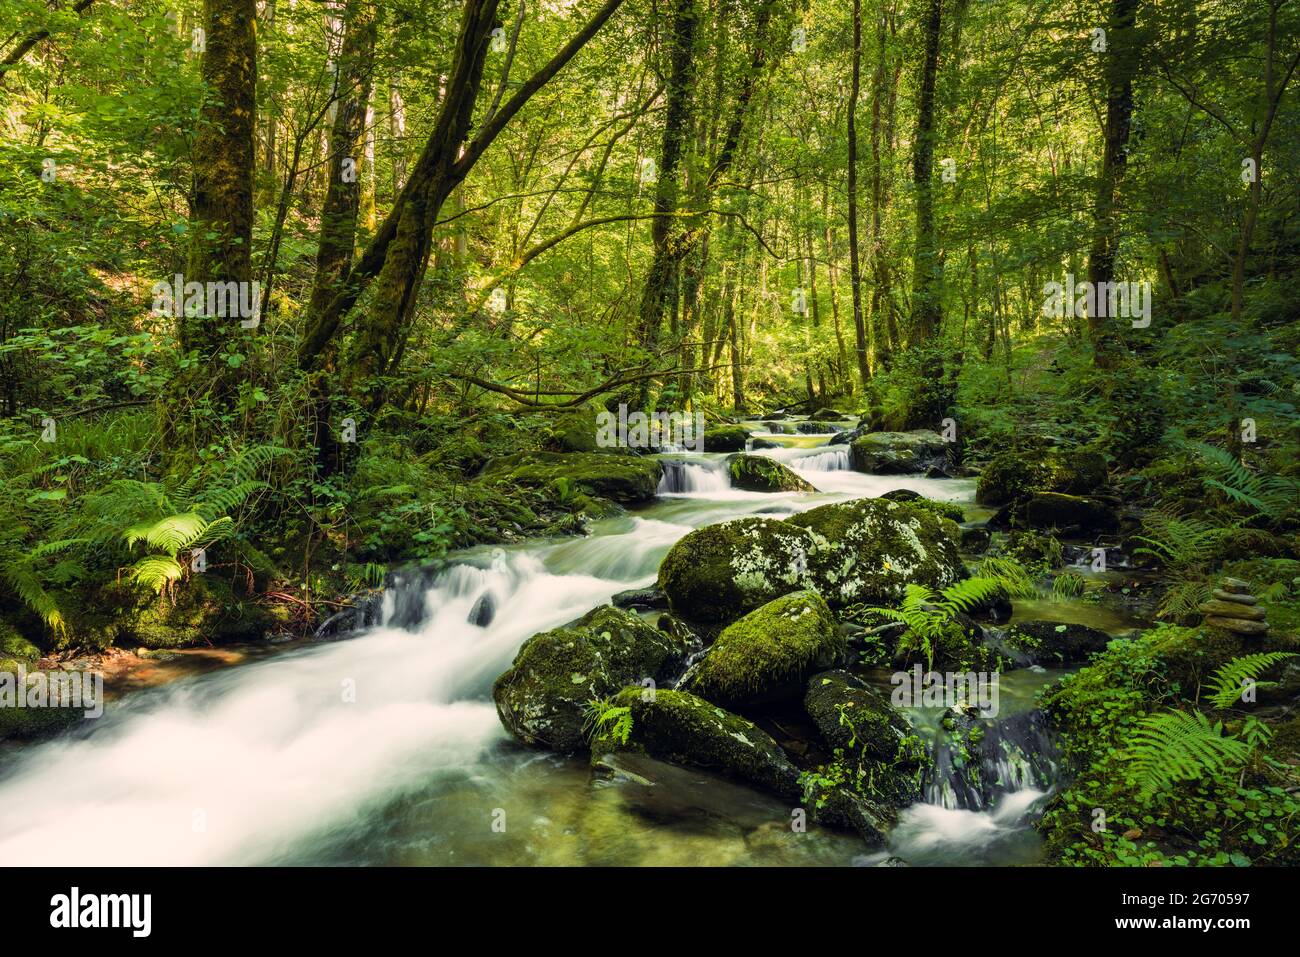 Ruscello incontaminato in una foresta vergine. Fiume Sesin nel Parco Naturale di AS Fragas do Eume in Galizia, Spagna. Foto Stock